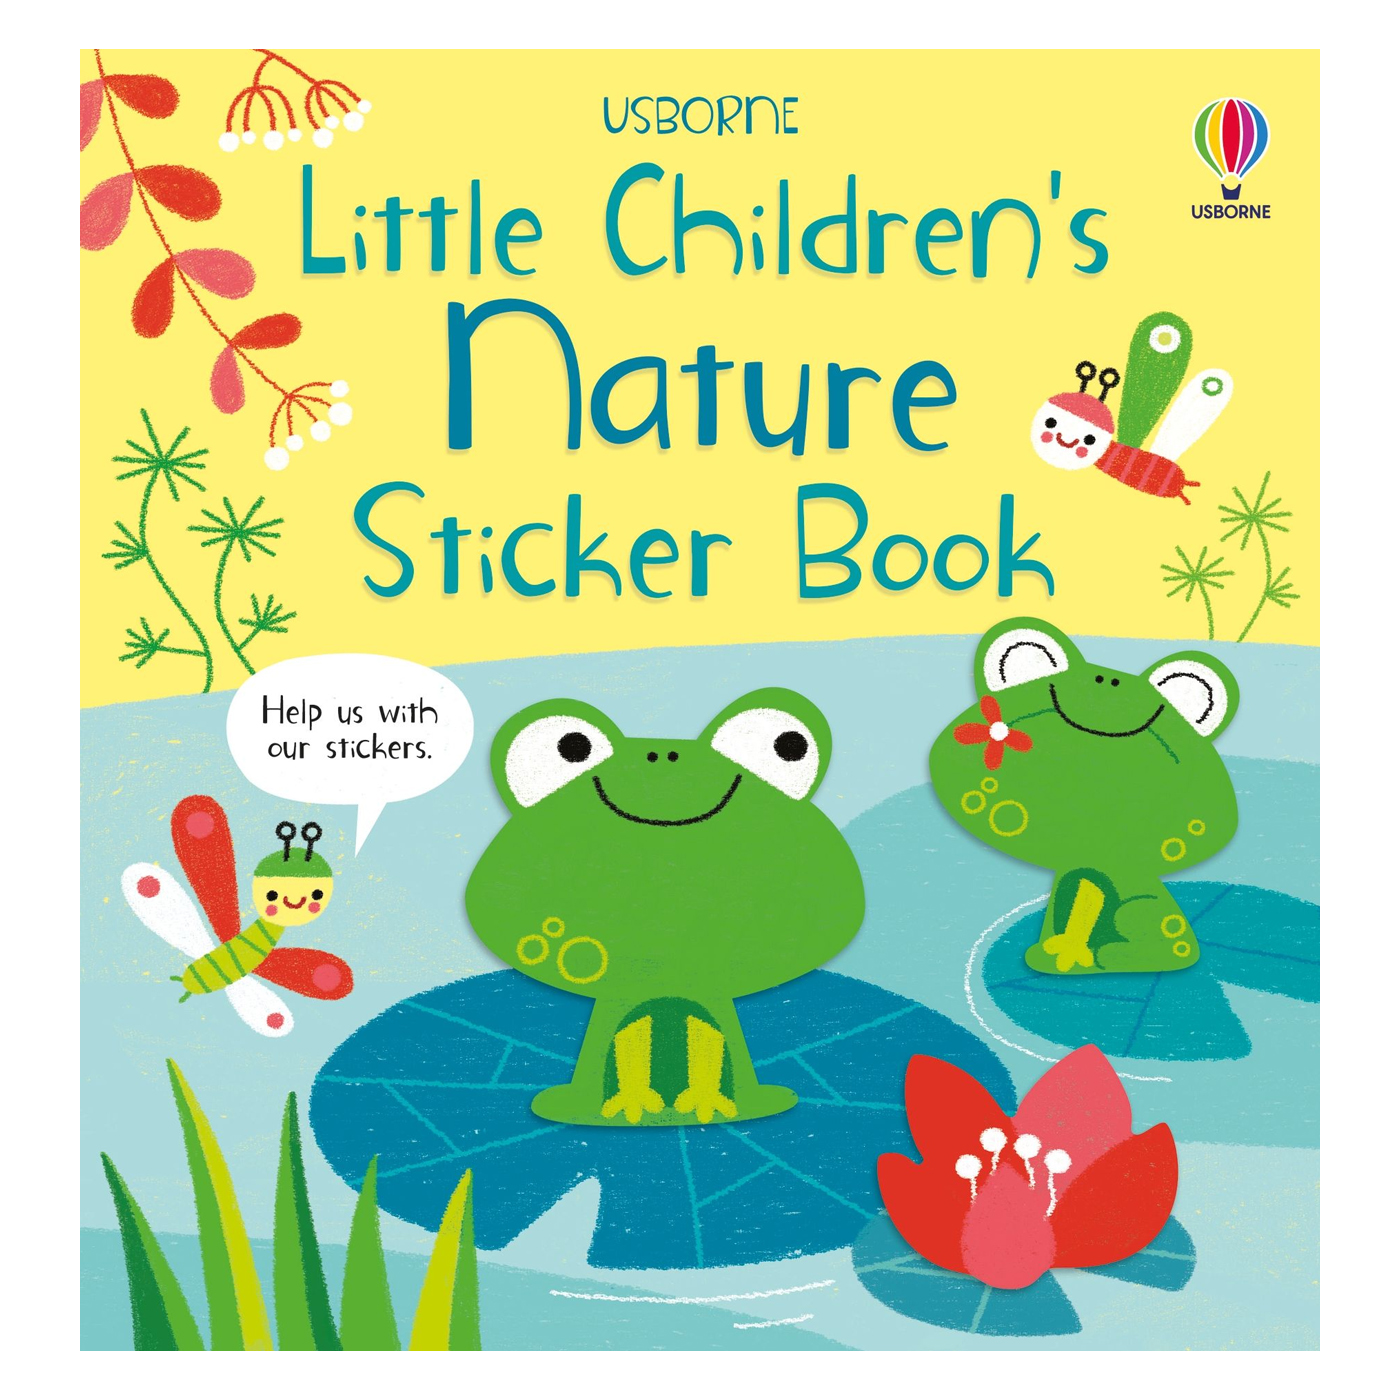 USBORNE Little Children's Nature Sticker Book